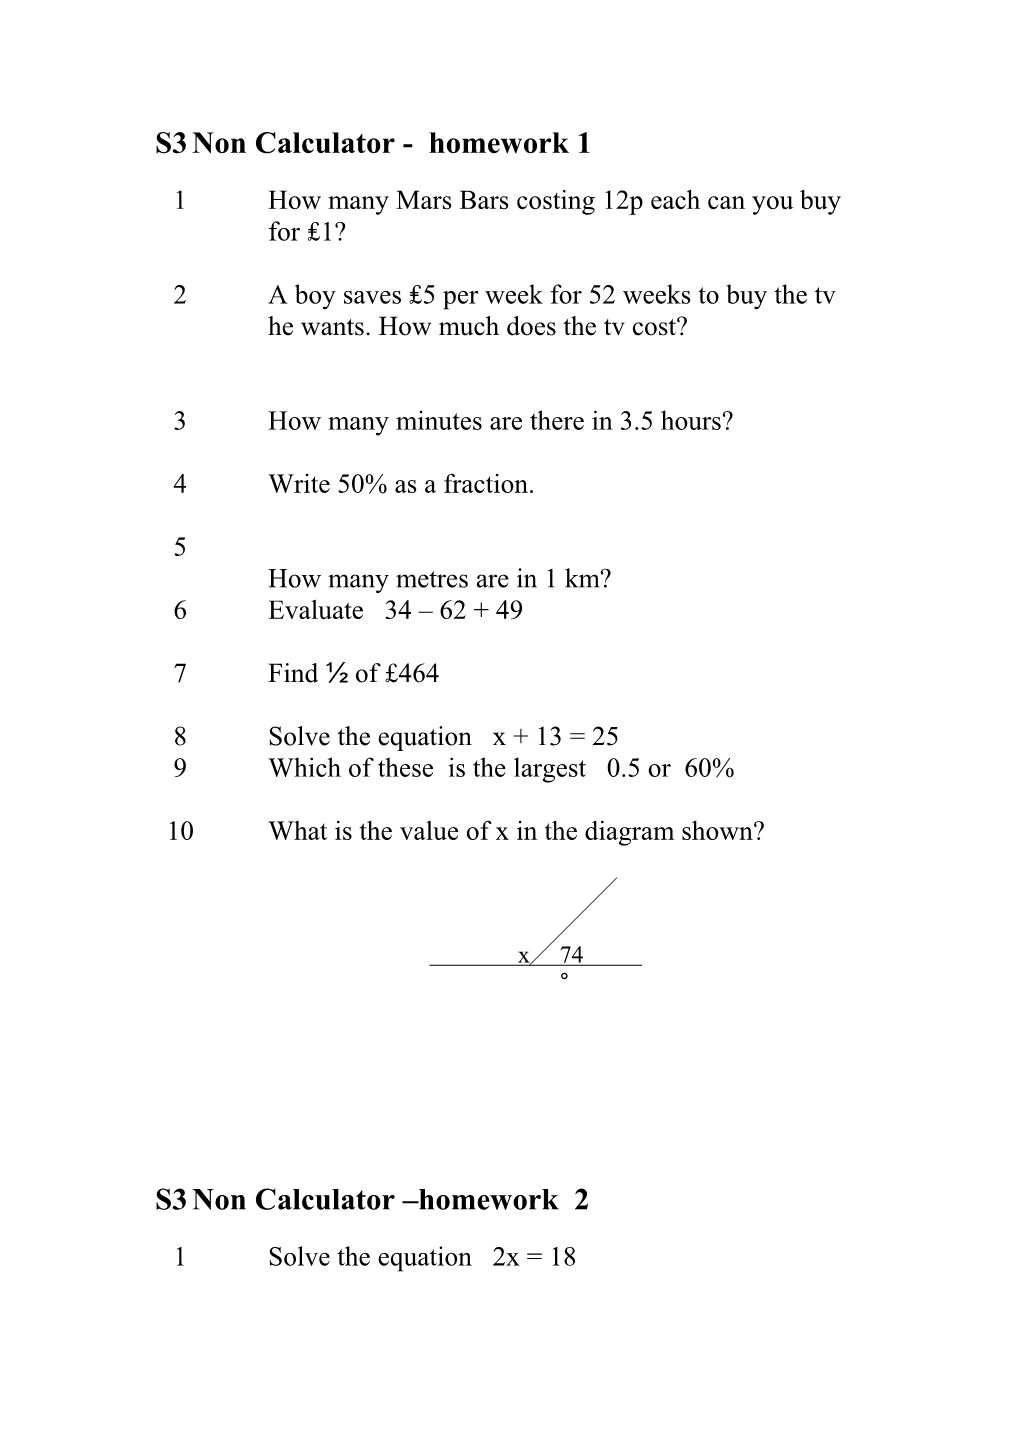 S3 Non Calculator - Homework 1